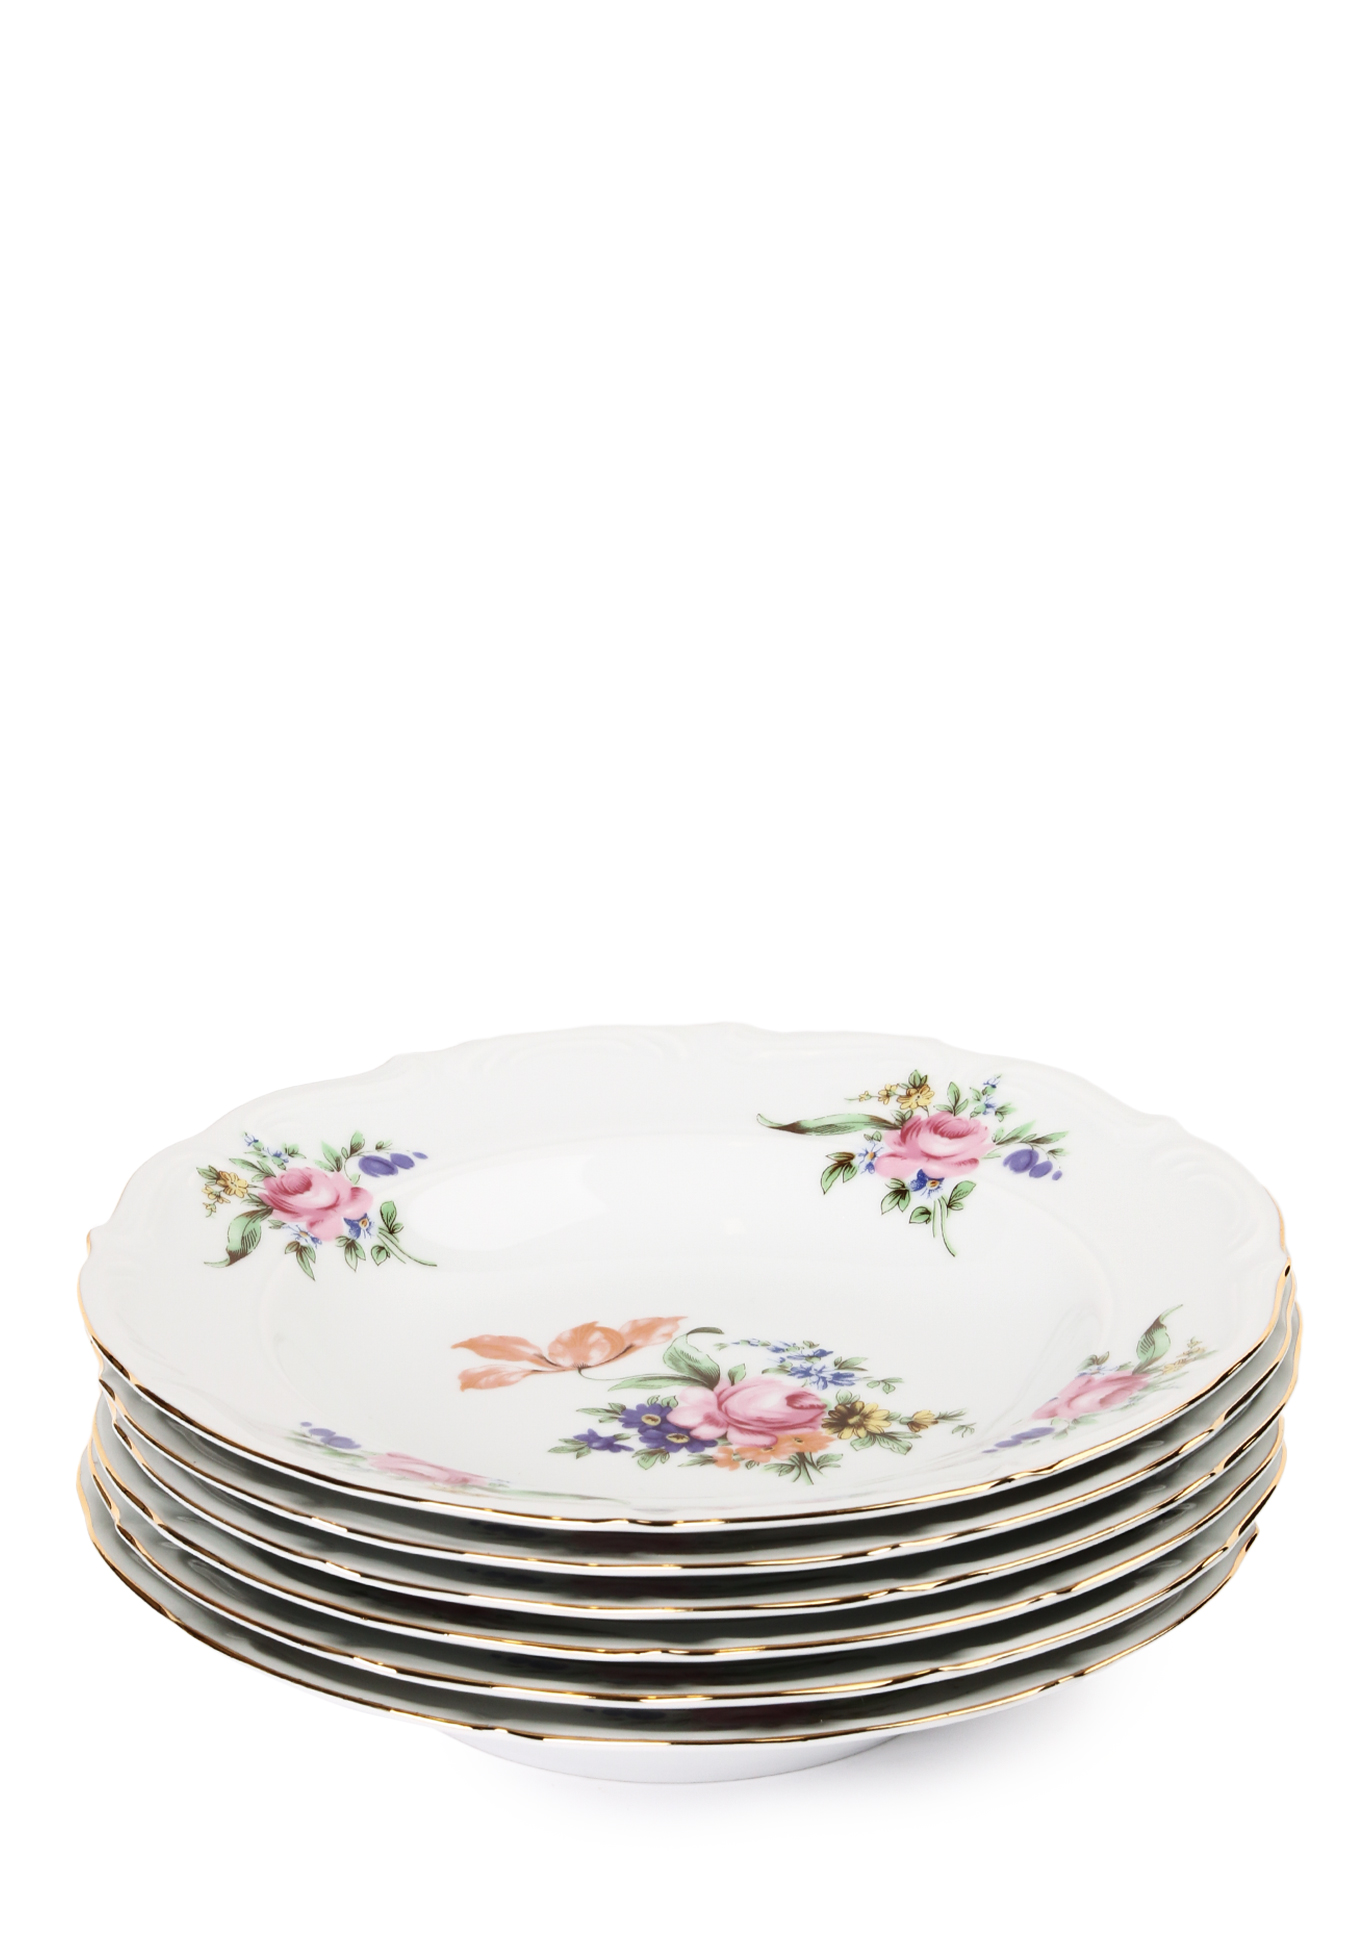 Набор глубоких тарелок из чешского фарфора набор закладкок магнитных 6 штук ассорти цветы